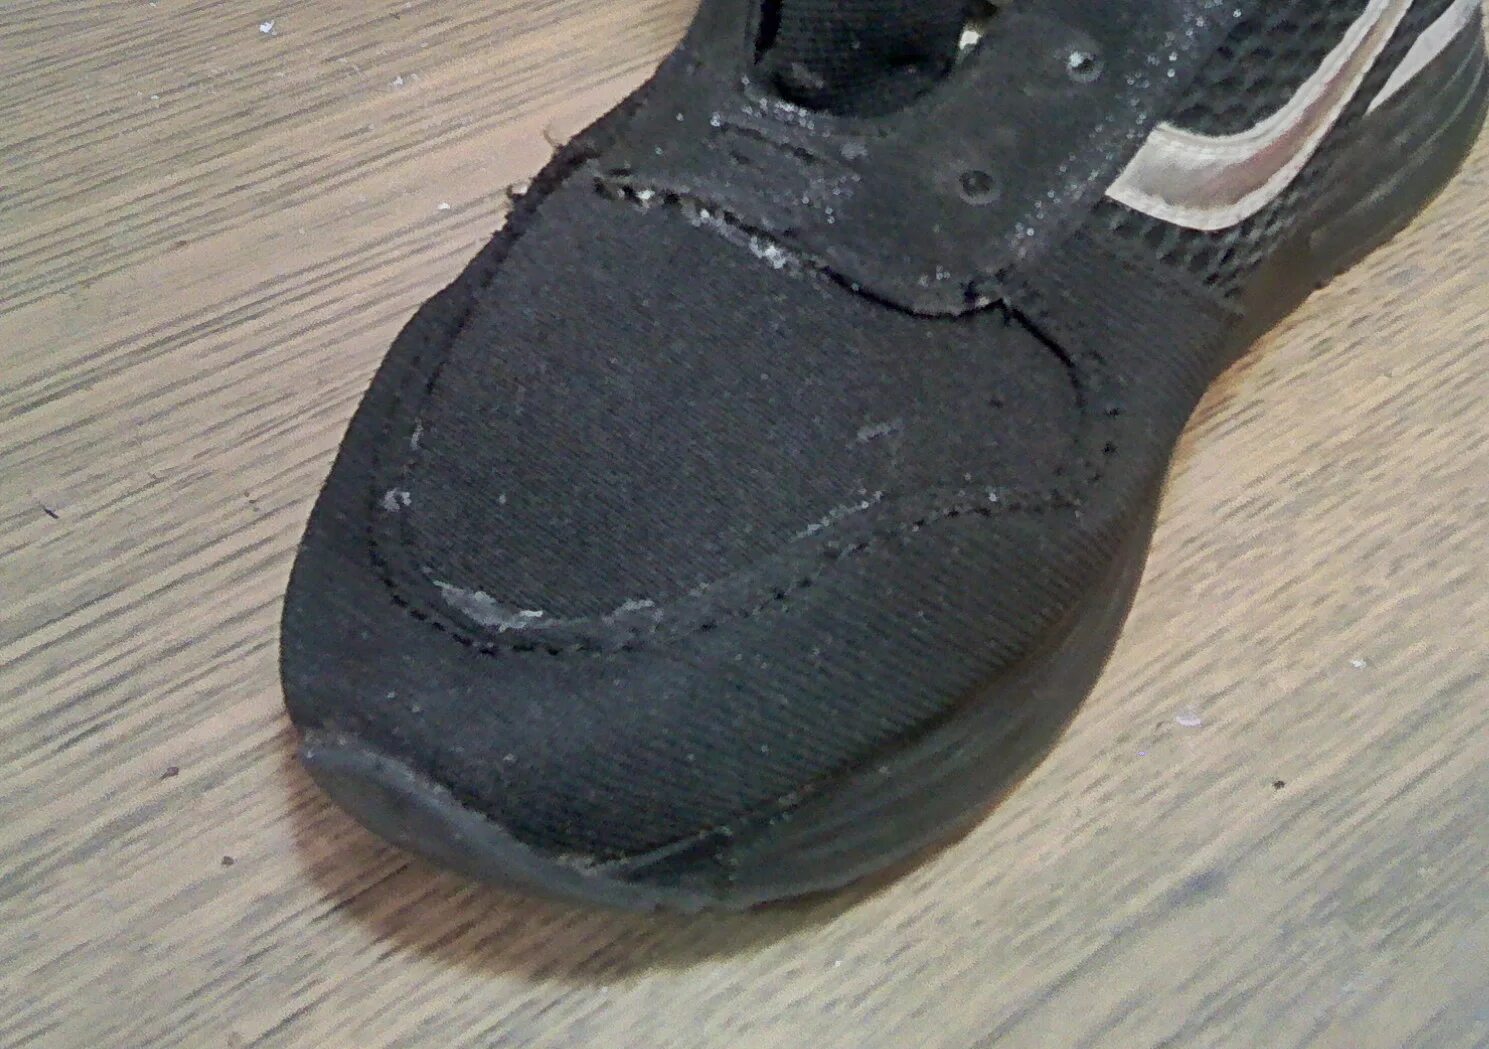 Порванные кроссовки. Кроссовки ремонте. Сетка на кроссовках у подошвы порвалась. Протираются кроссовки на большом пальце ноги.